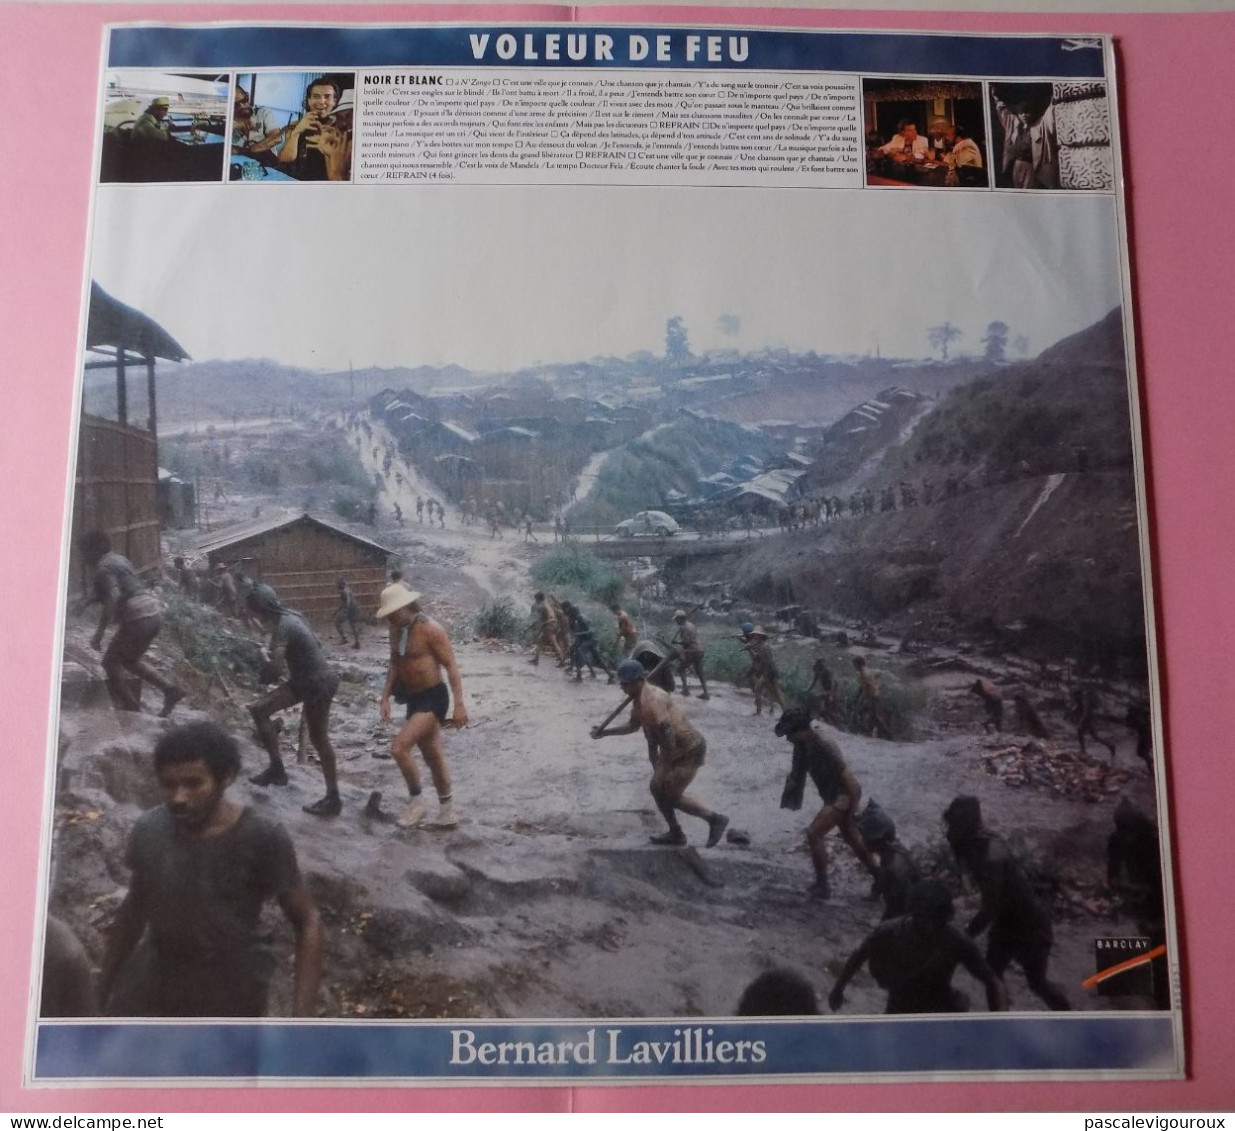 BERNARD LAVILLIERS VOLEUR DE FEU DOUBLE 33T LP 1986 BARCLAY 829.341/1 2 Disques - Altri - Francese